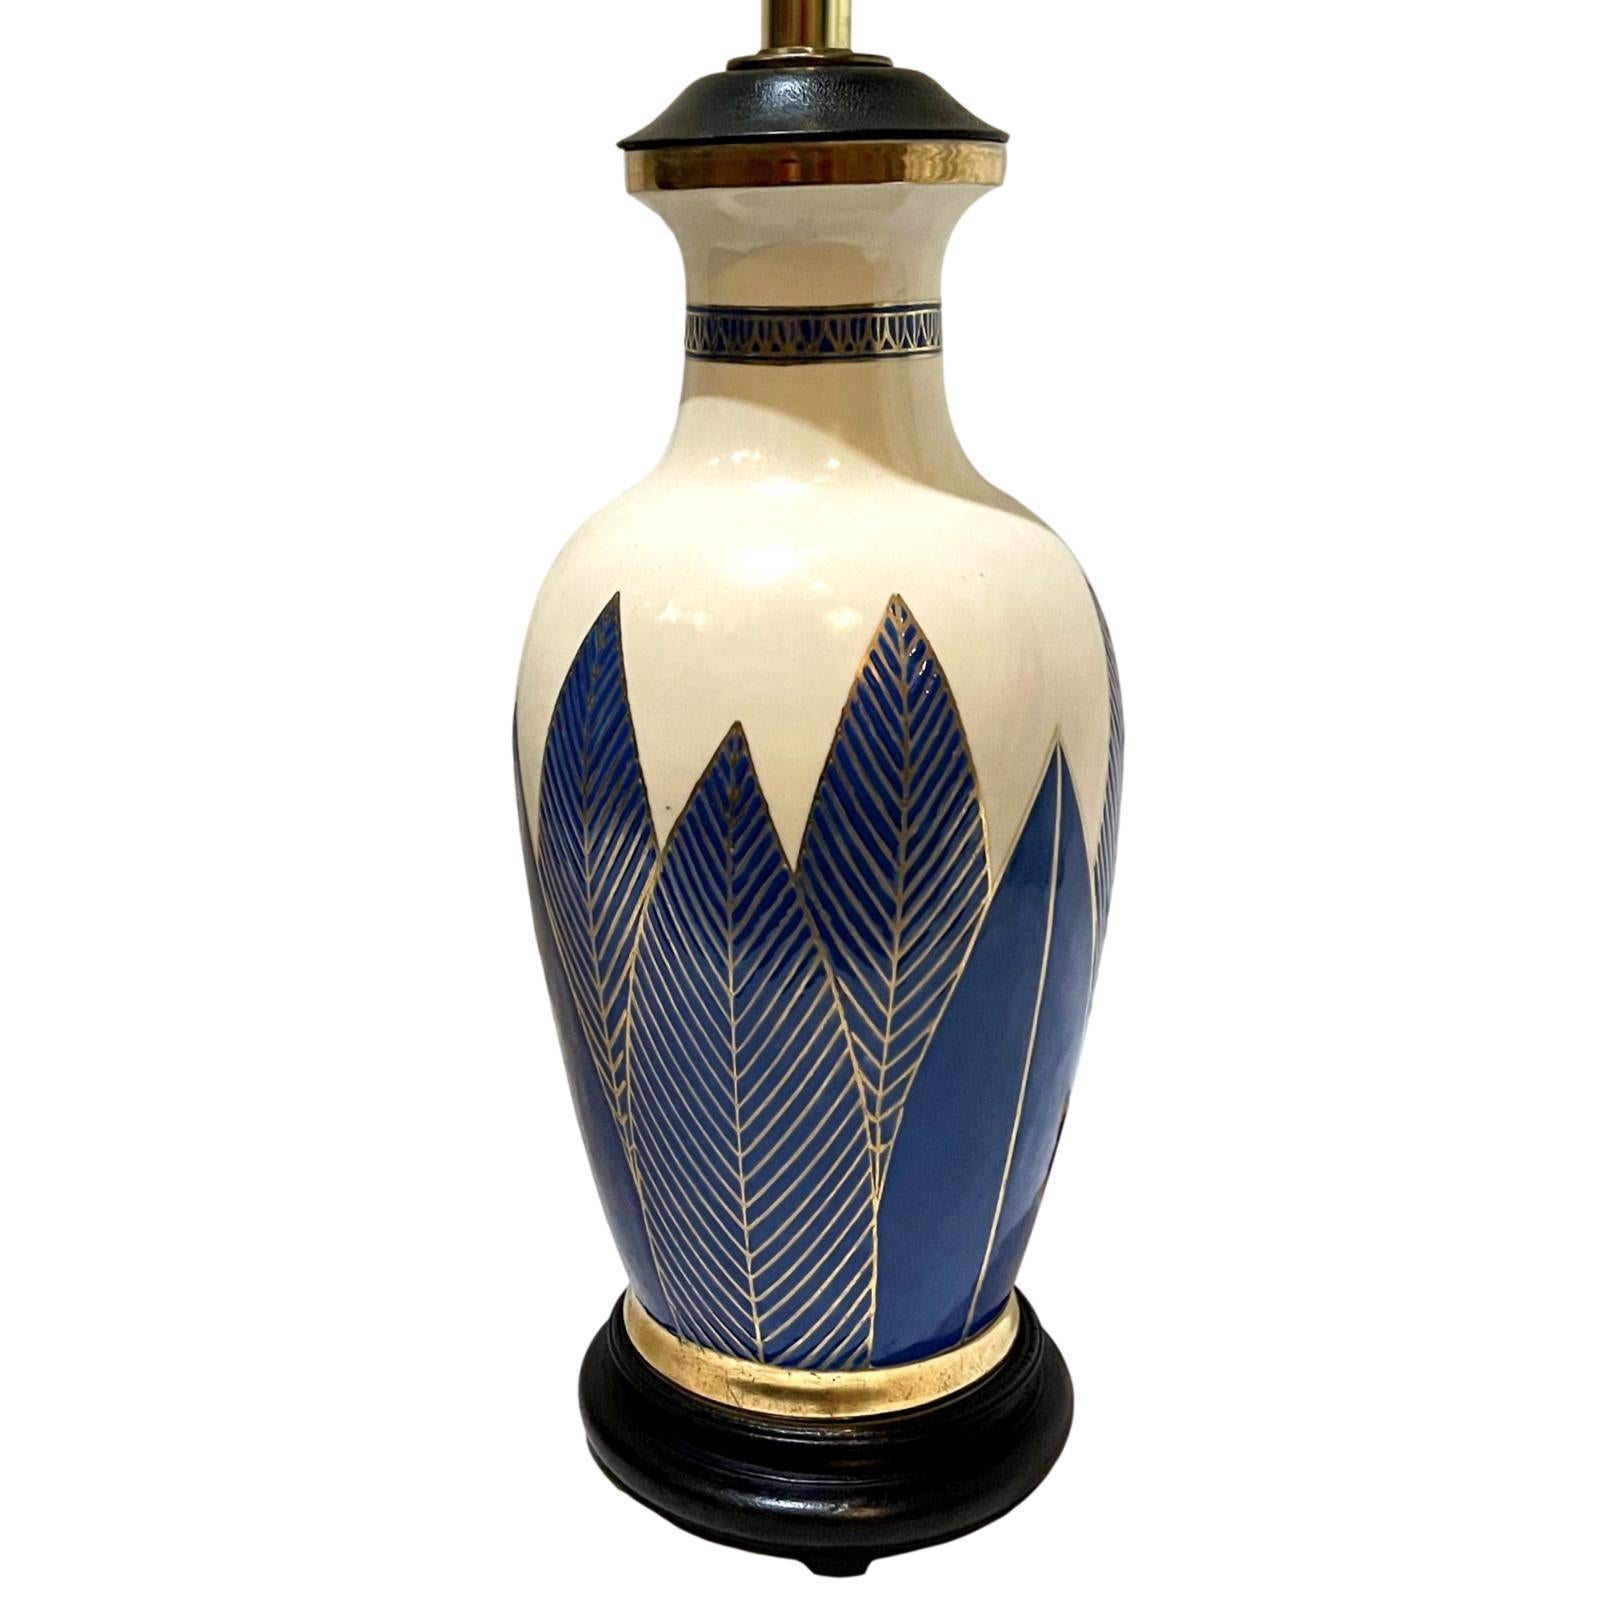 Lampe de table en porcelaine bleue et blanche avec détails dorés, datant des années 1950.

Mesures :
Hauteur du corps : 16
Diamètre : 6